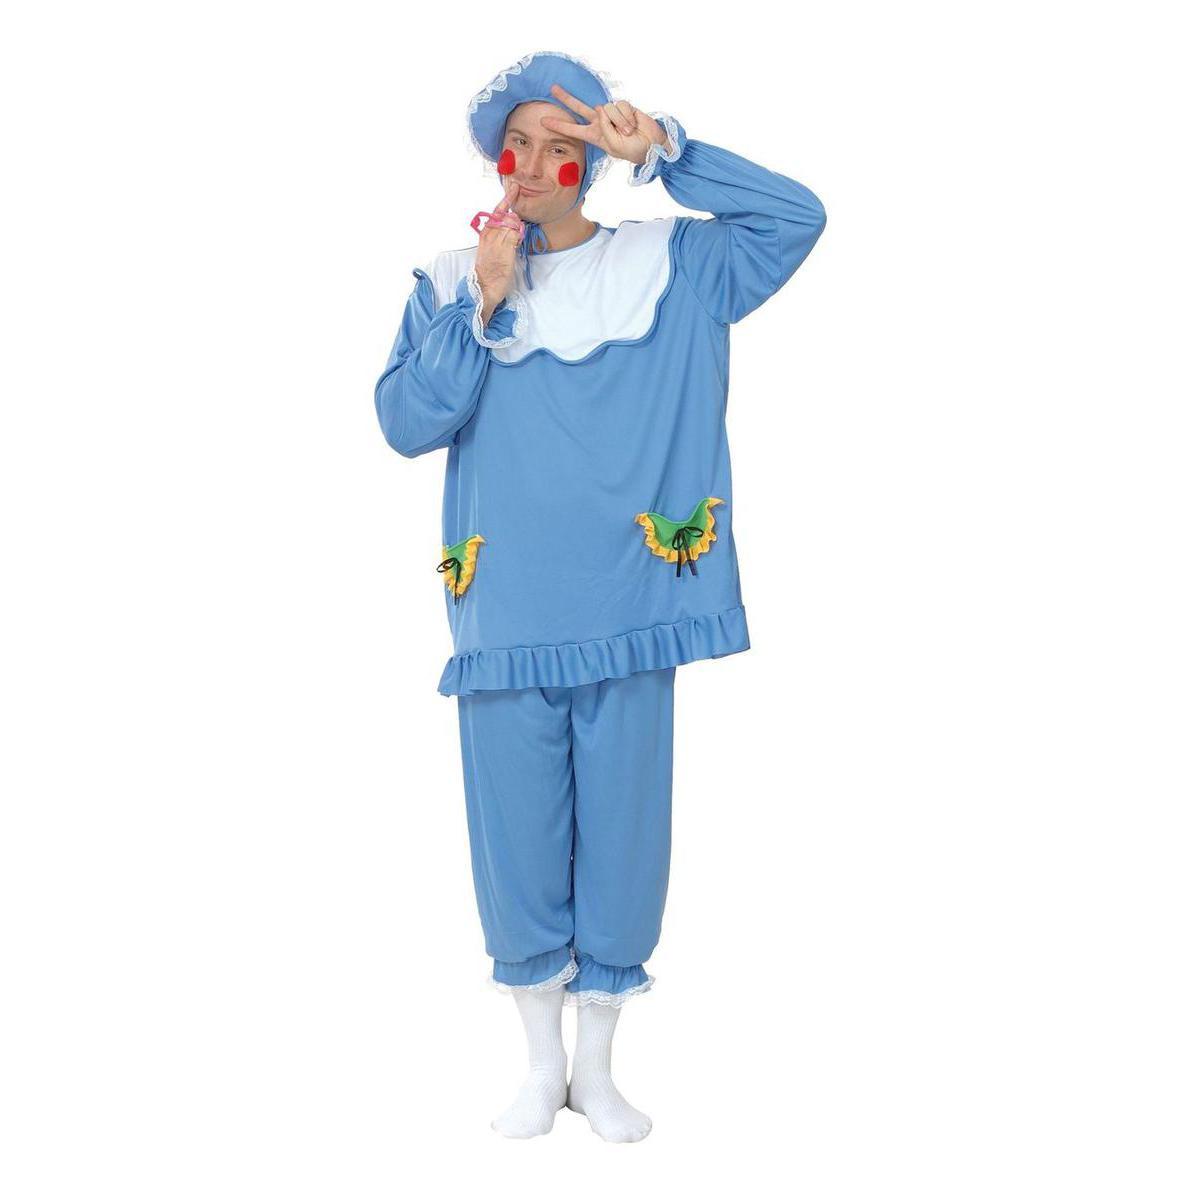 Costume adulte de bébé en polyester - Taille unique - Bleu